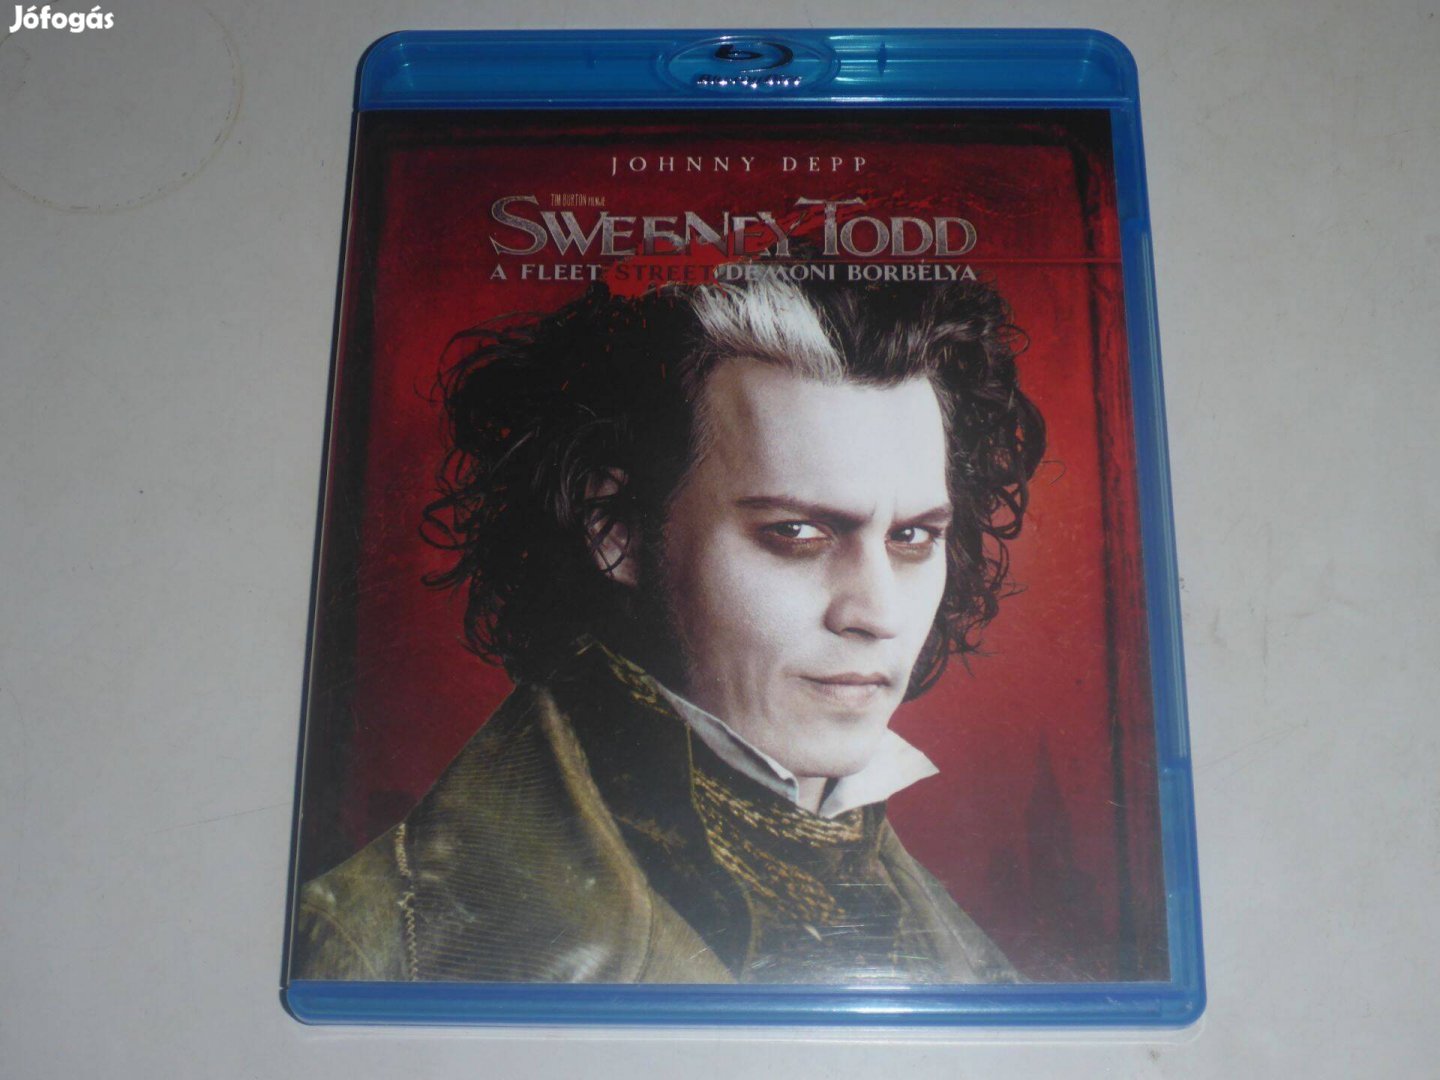 Sweeney Todd - A Fleet Street démoni borbélya blu-ray film